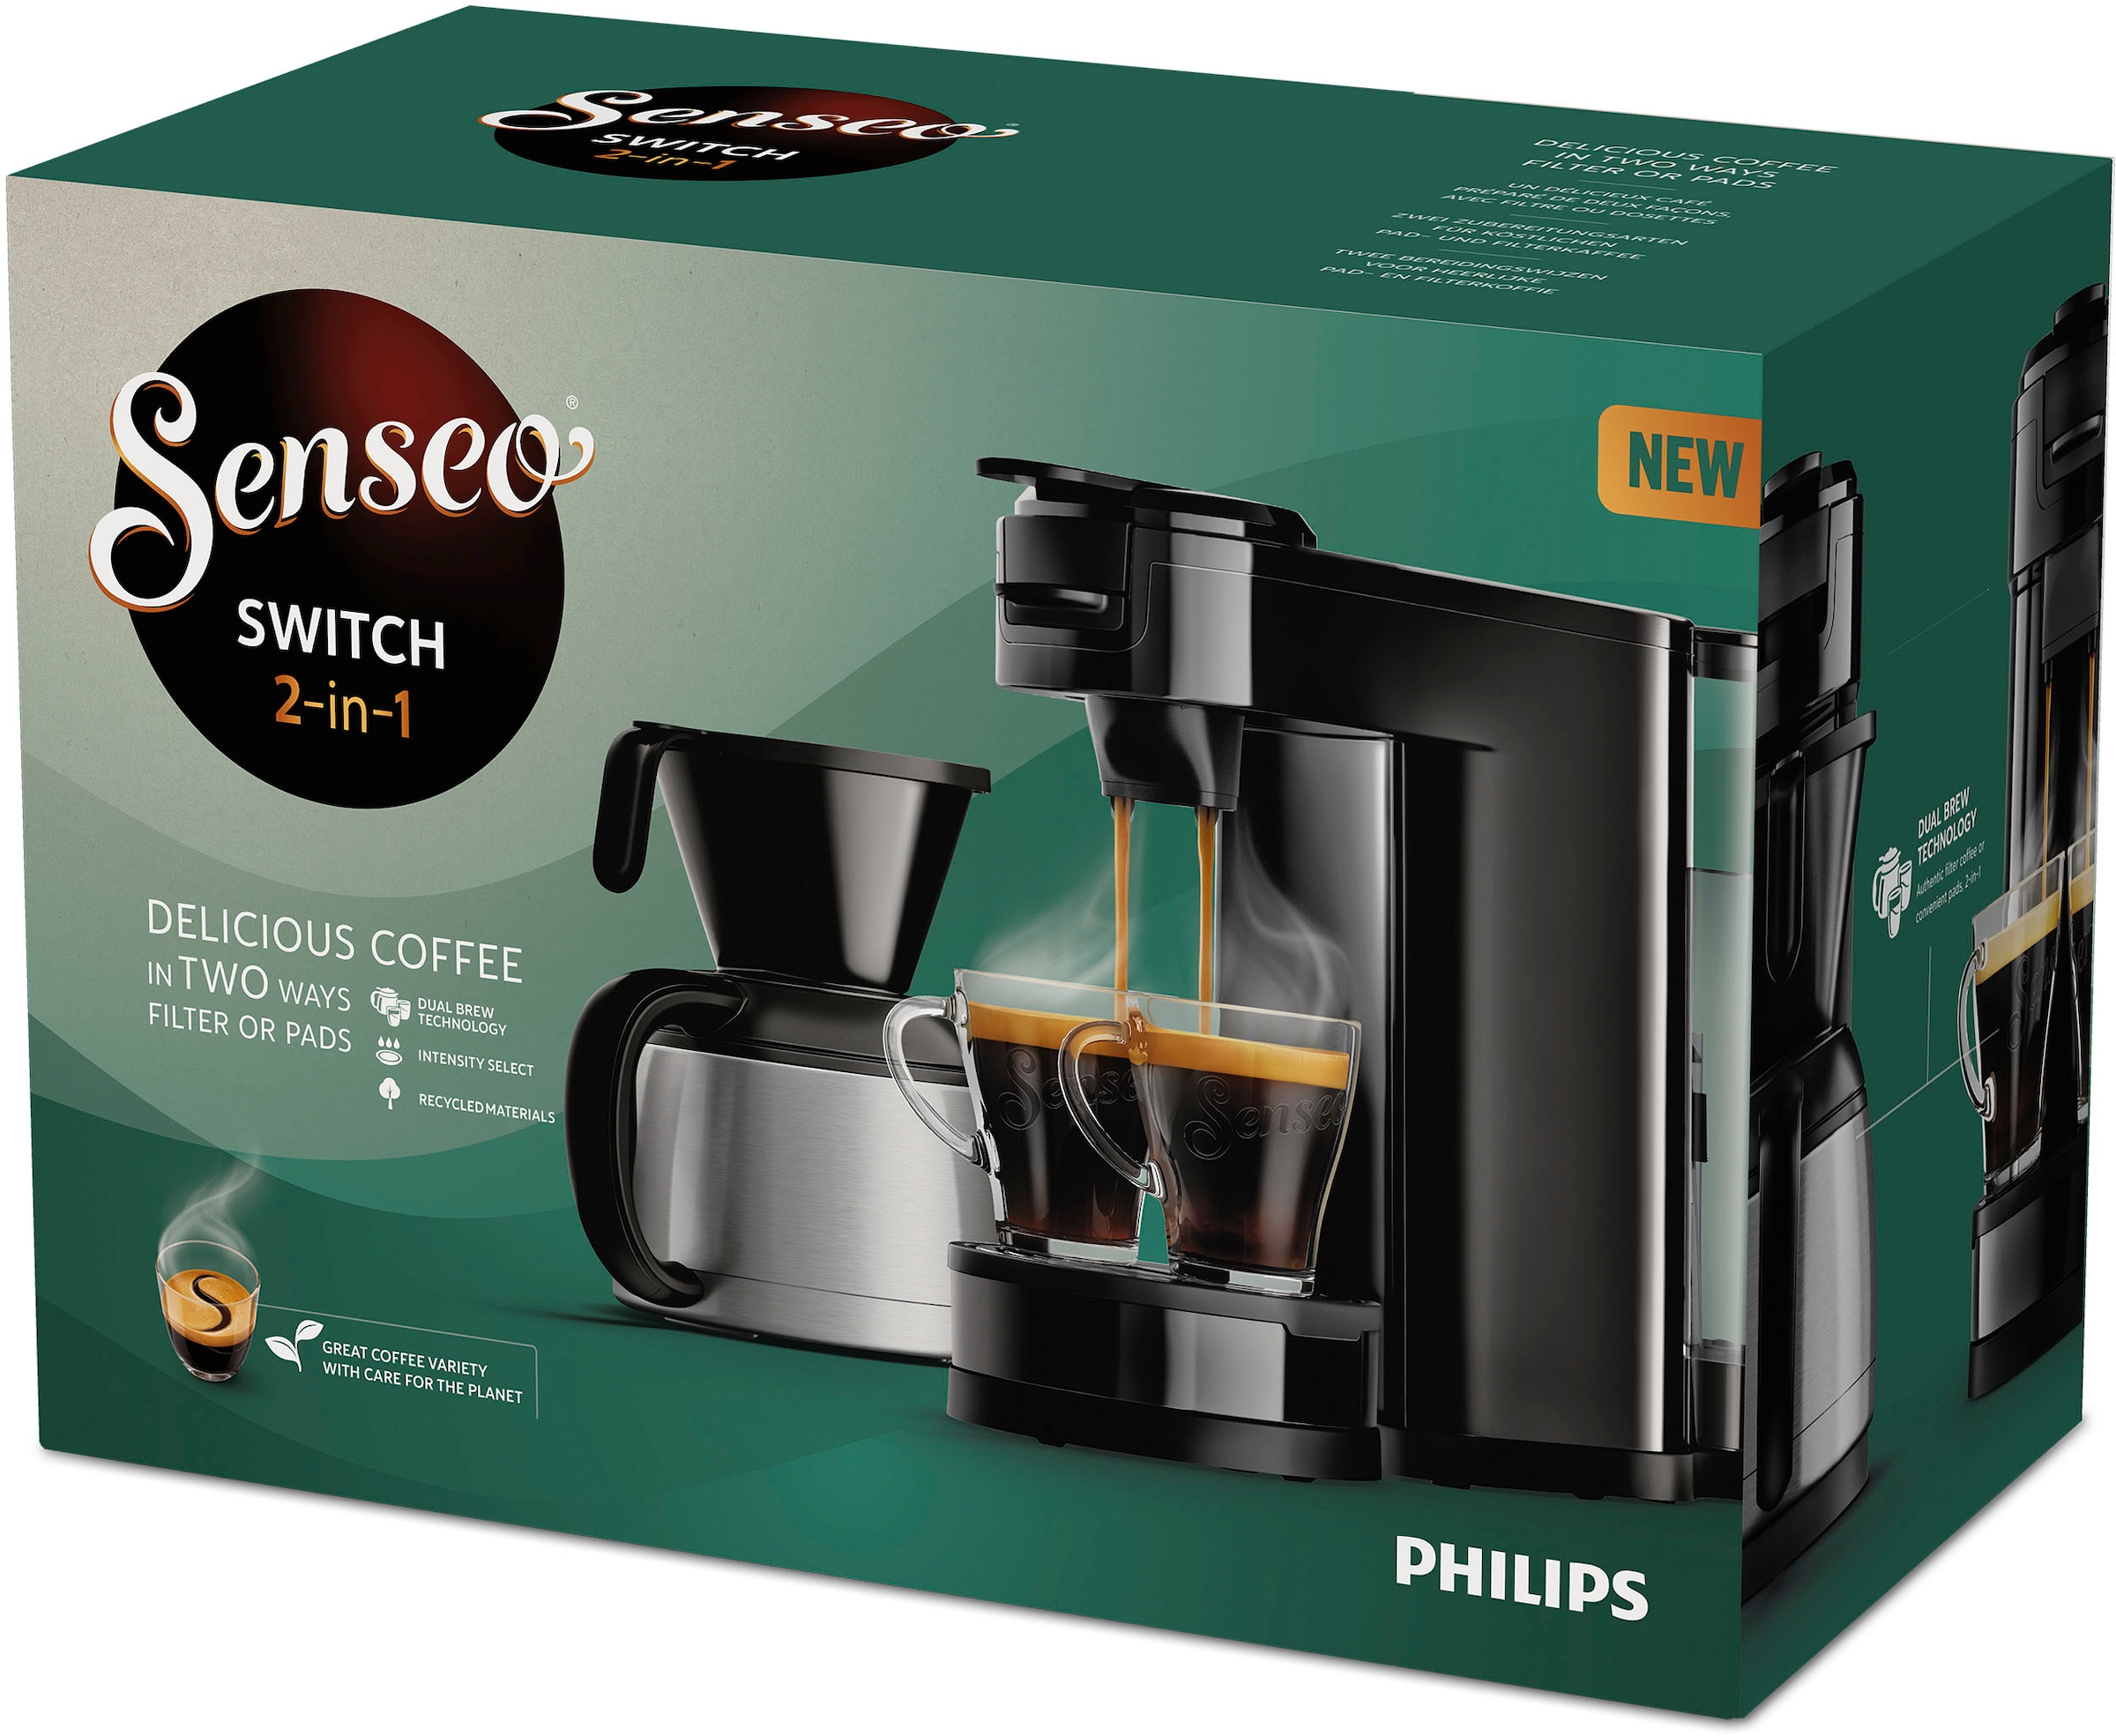 Philips l bestellen HD6592/64, Wert Plastik, »Switch online Plus, Kaffeepaddose €9,90 1 UVP recyceltem Senseo 26% Kaffee Kaffeekanne, Crema Technologie«, inkl. Boost Kaffeepadmaschine